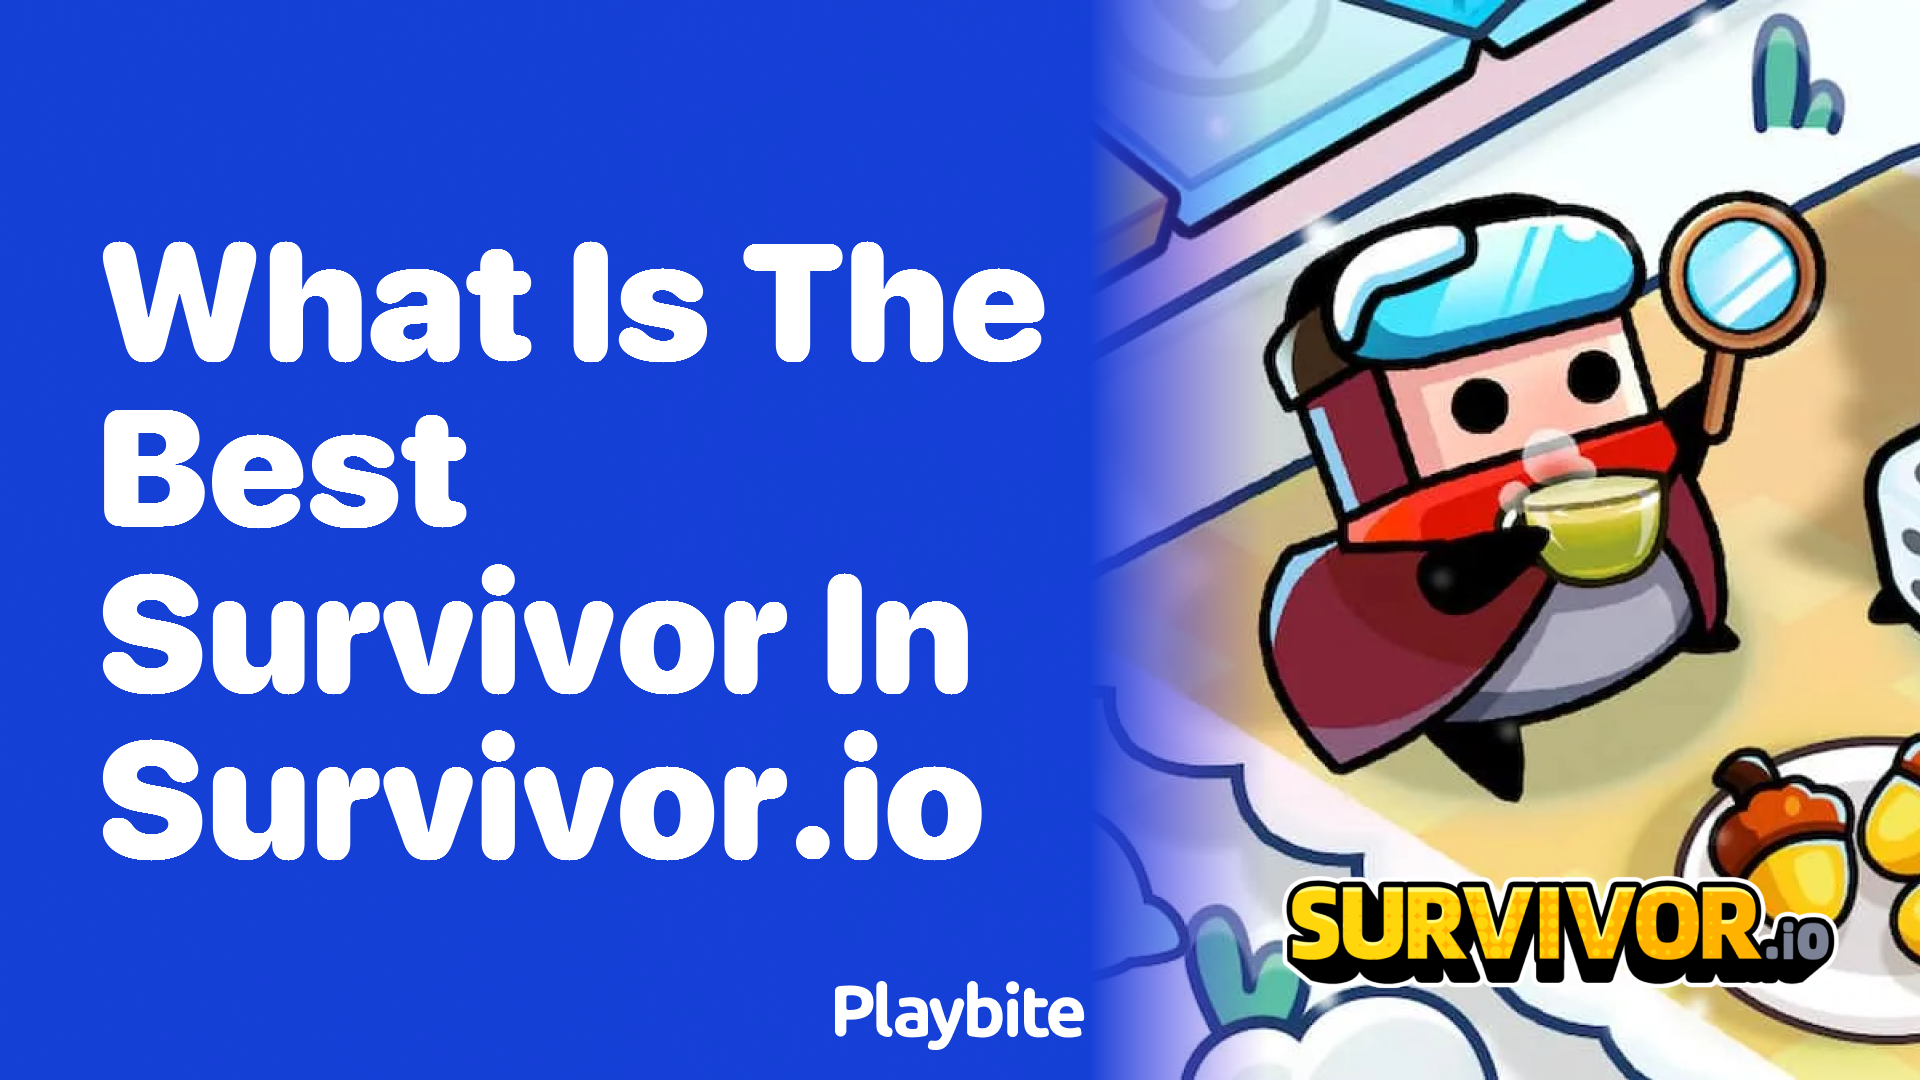 What Is the Best Survivor in Survivor.io?